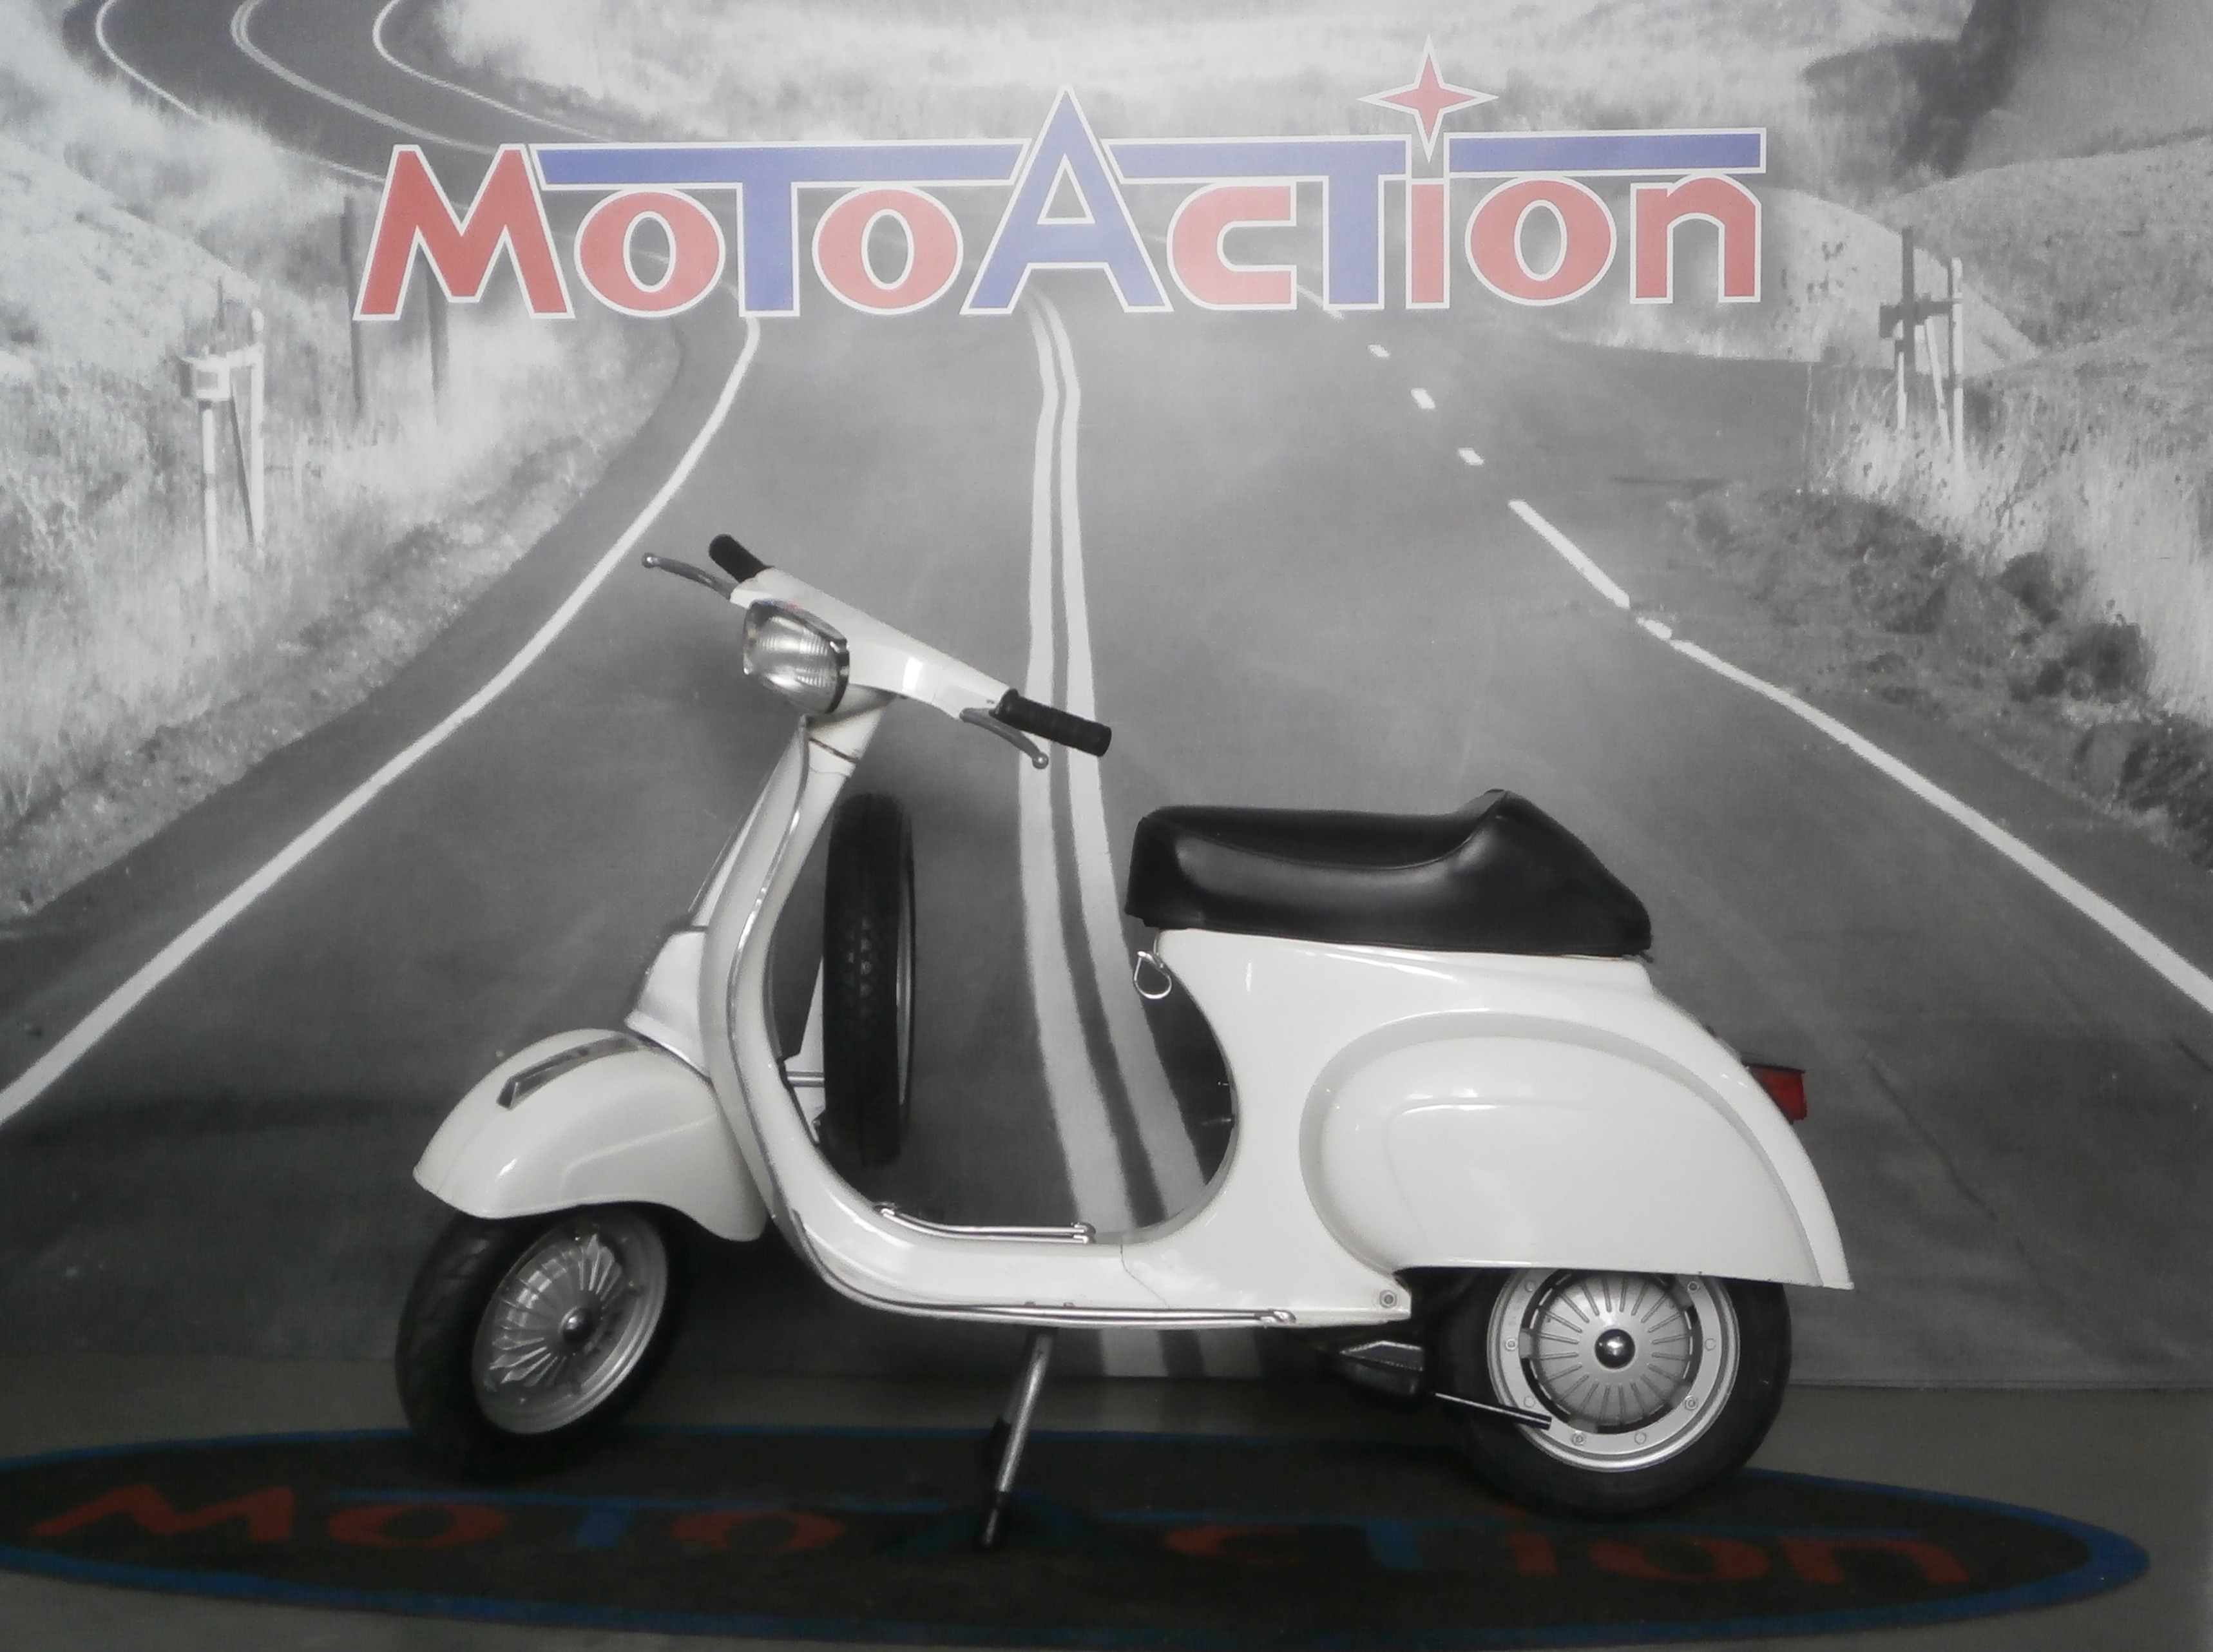 PIAGGIO VESPA 50 SPECIAL - 1982 • Moto Action, concessionaria a